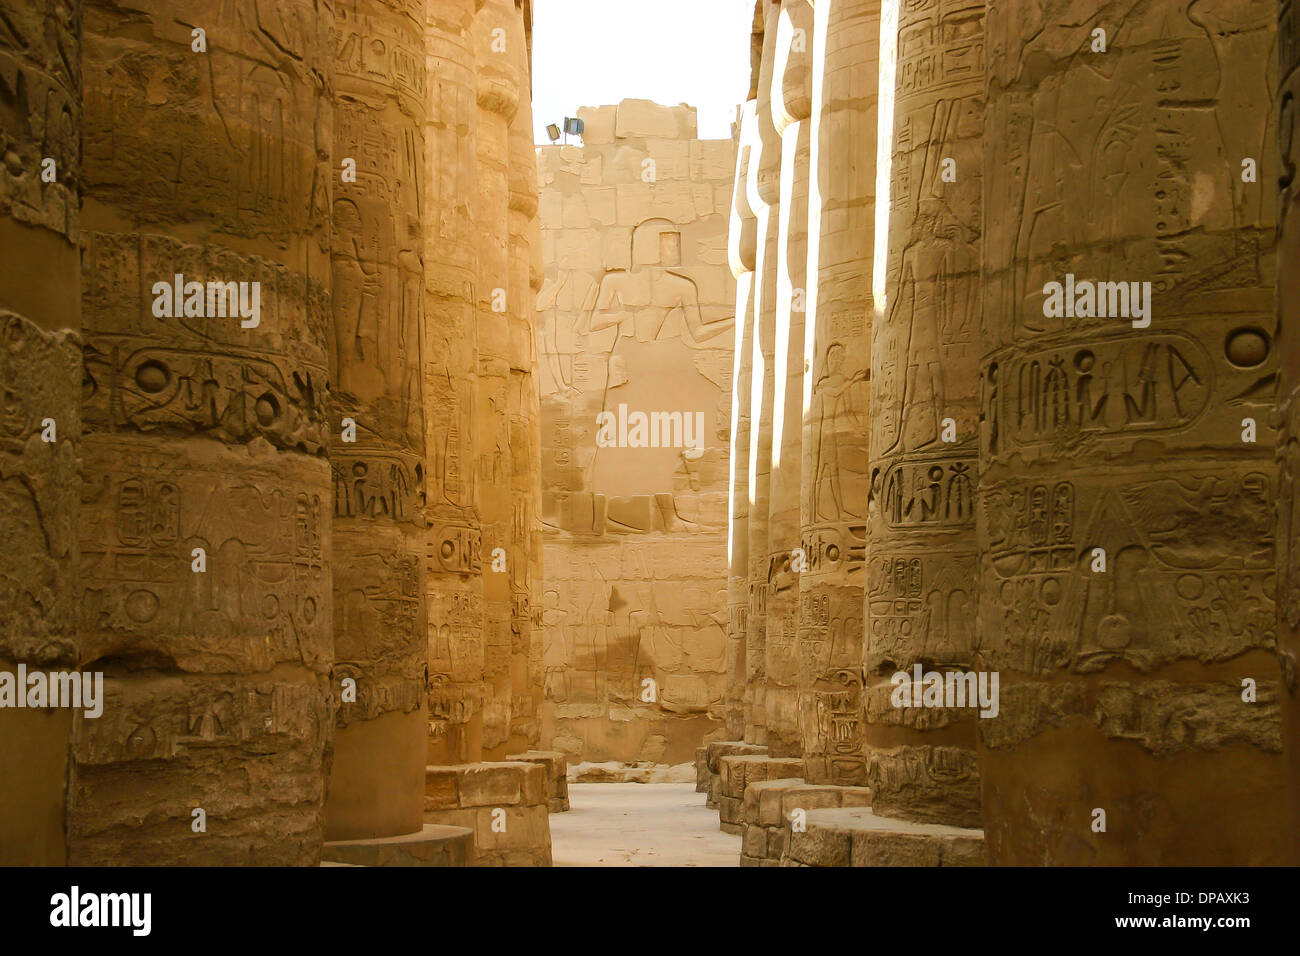 Hieroglyphics on wall of Karnak Temple in Luxor, Egypt. Stock Photo